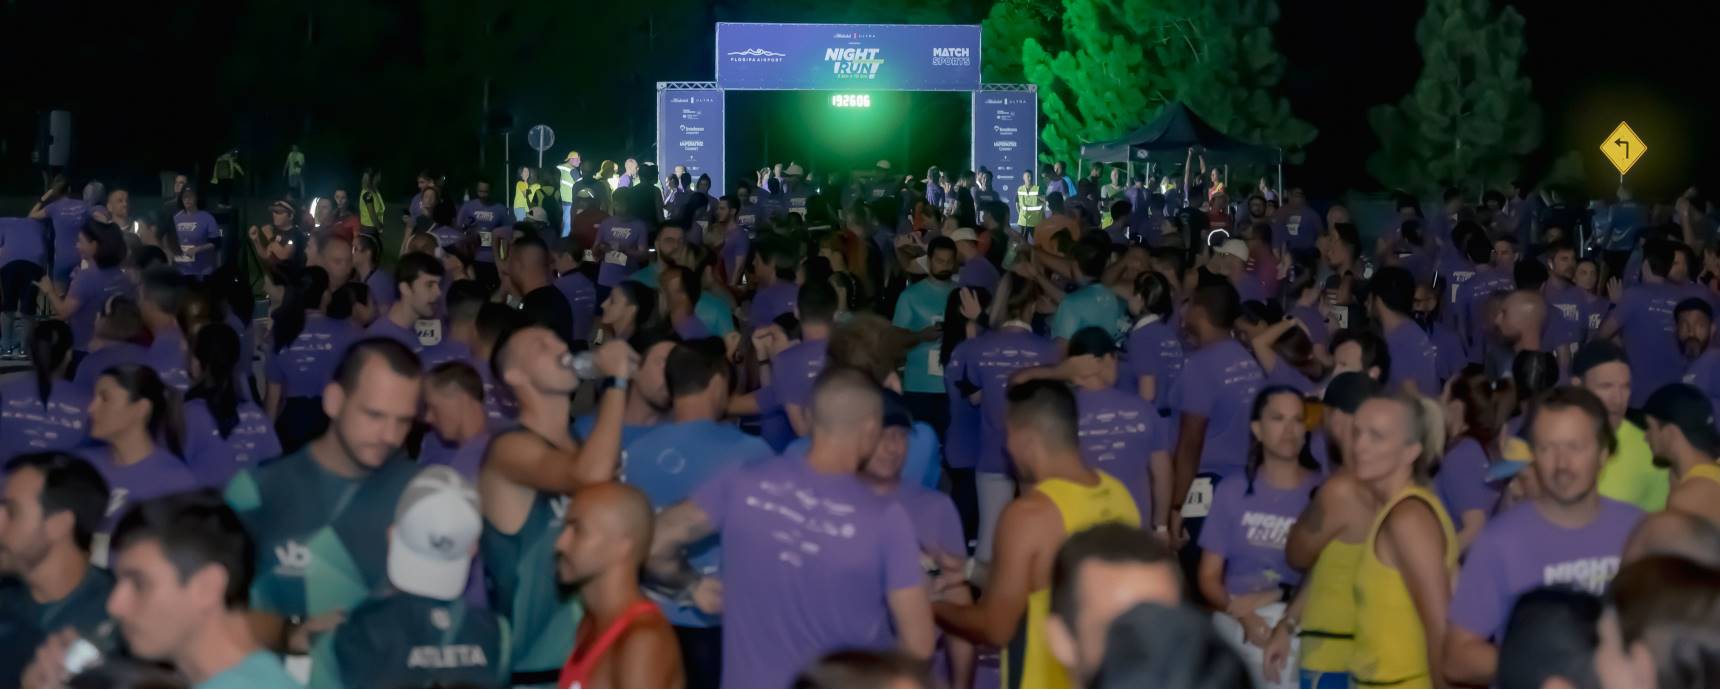 Nachtlauf Floripa Der Flughafen begeistert 1,2 Athleten bei einem beispiellosen Nachtrennen